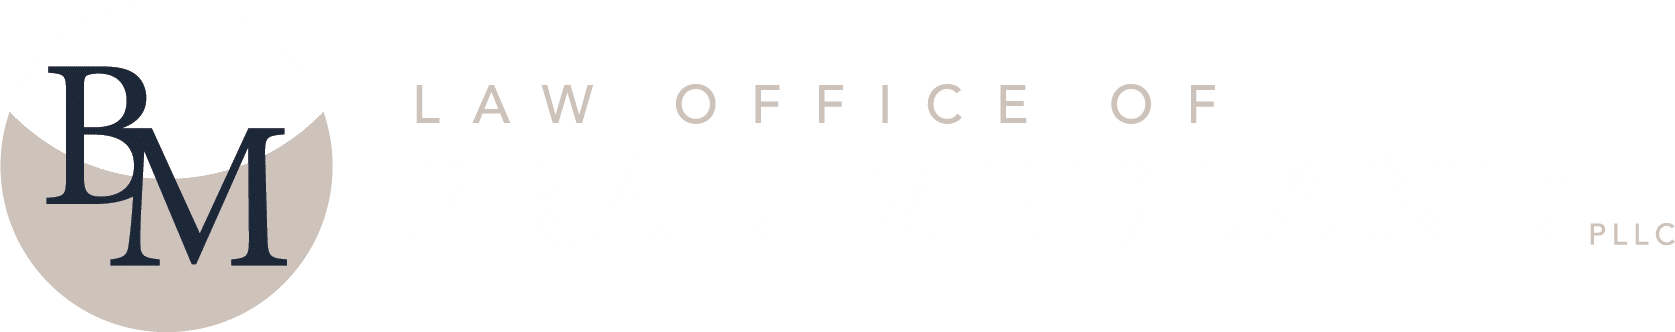 Law Office of Brad Medland, PLLC